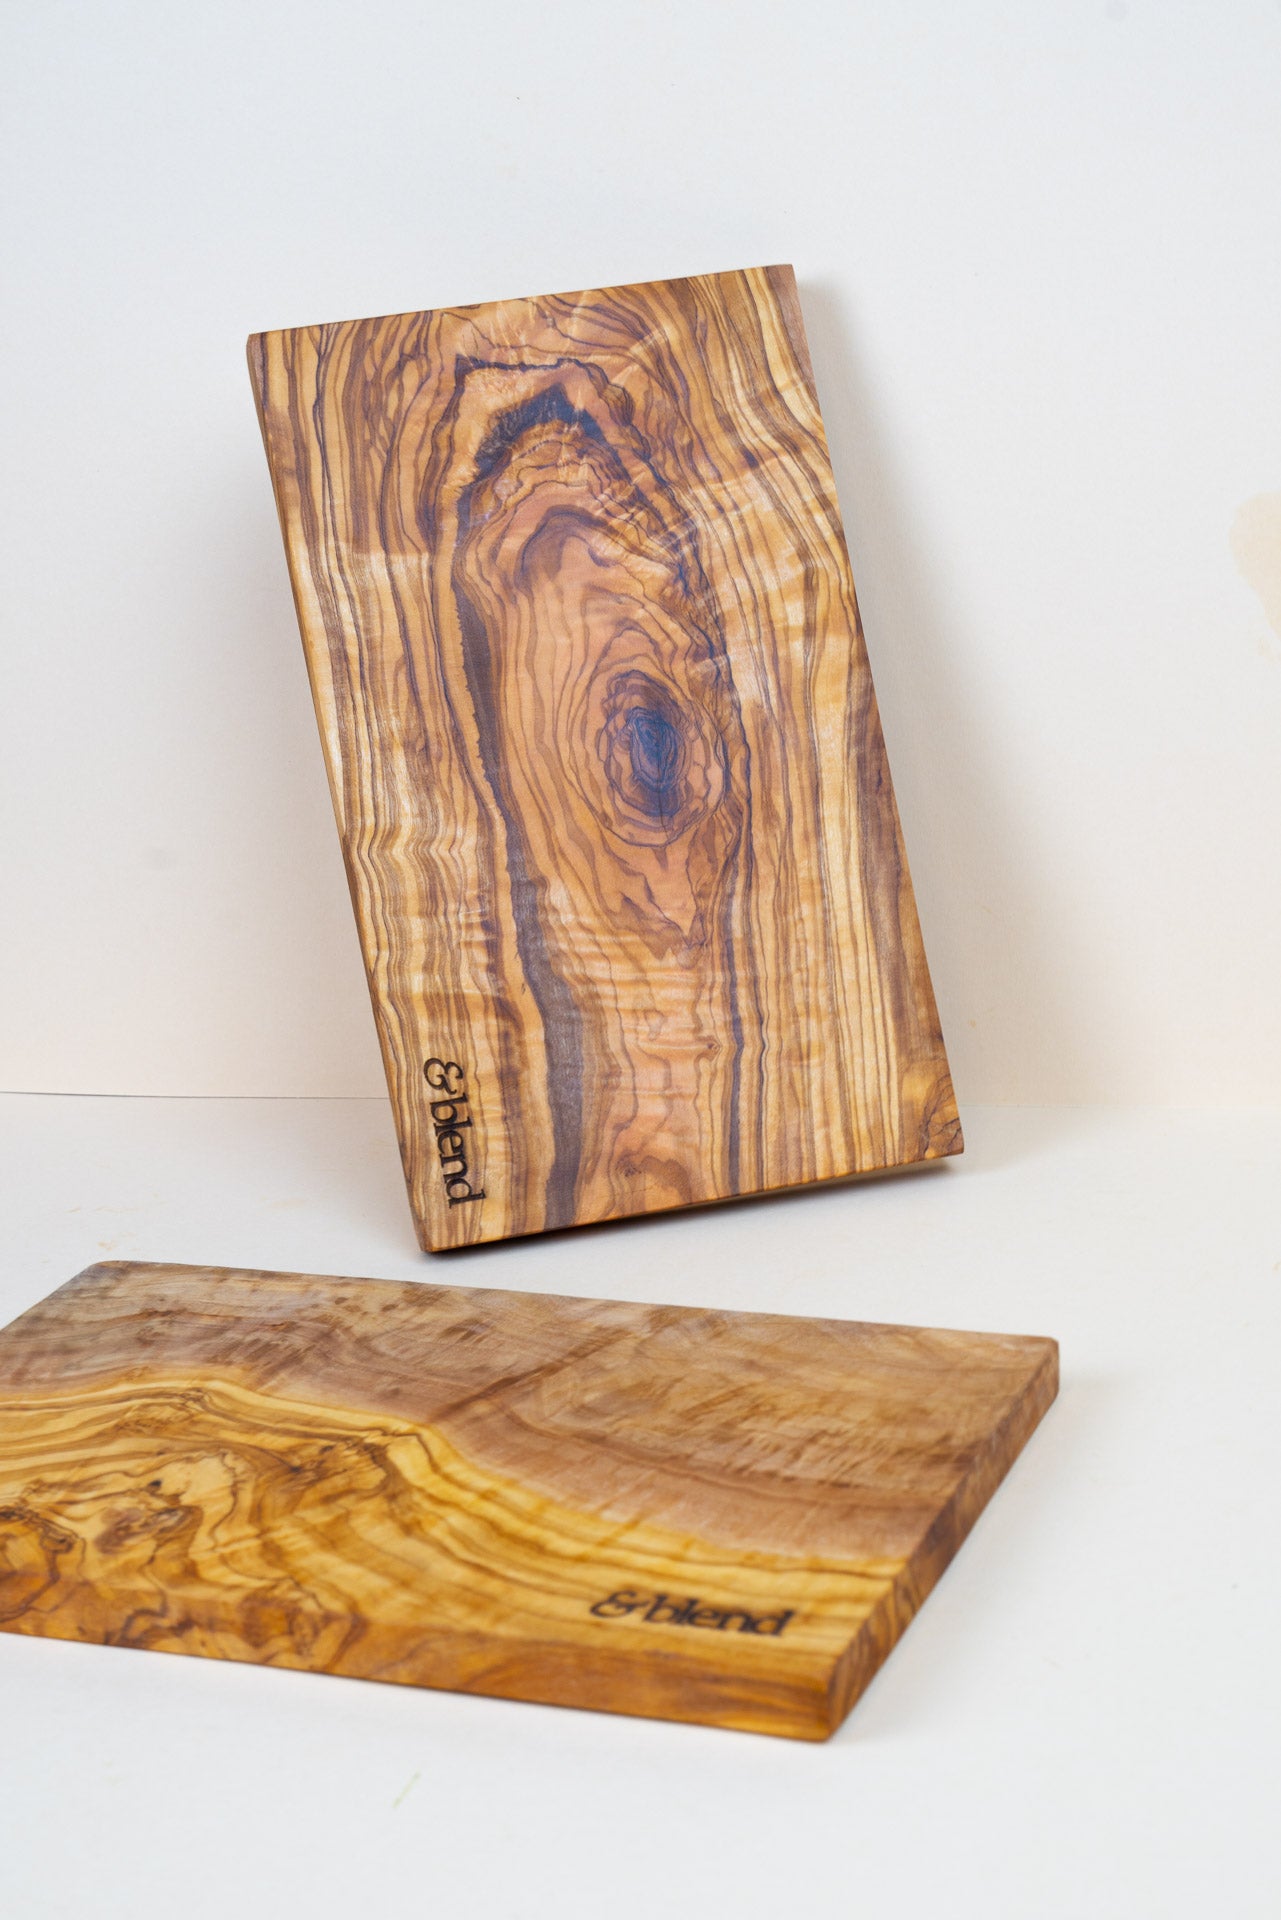 Corazón de madera fabricado en madera de olivo